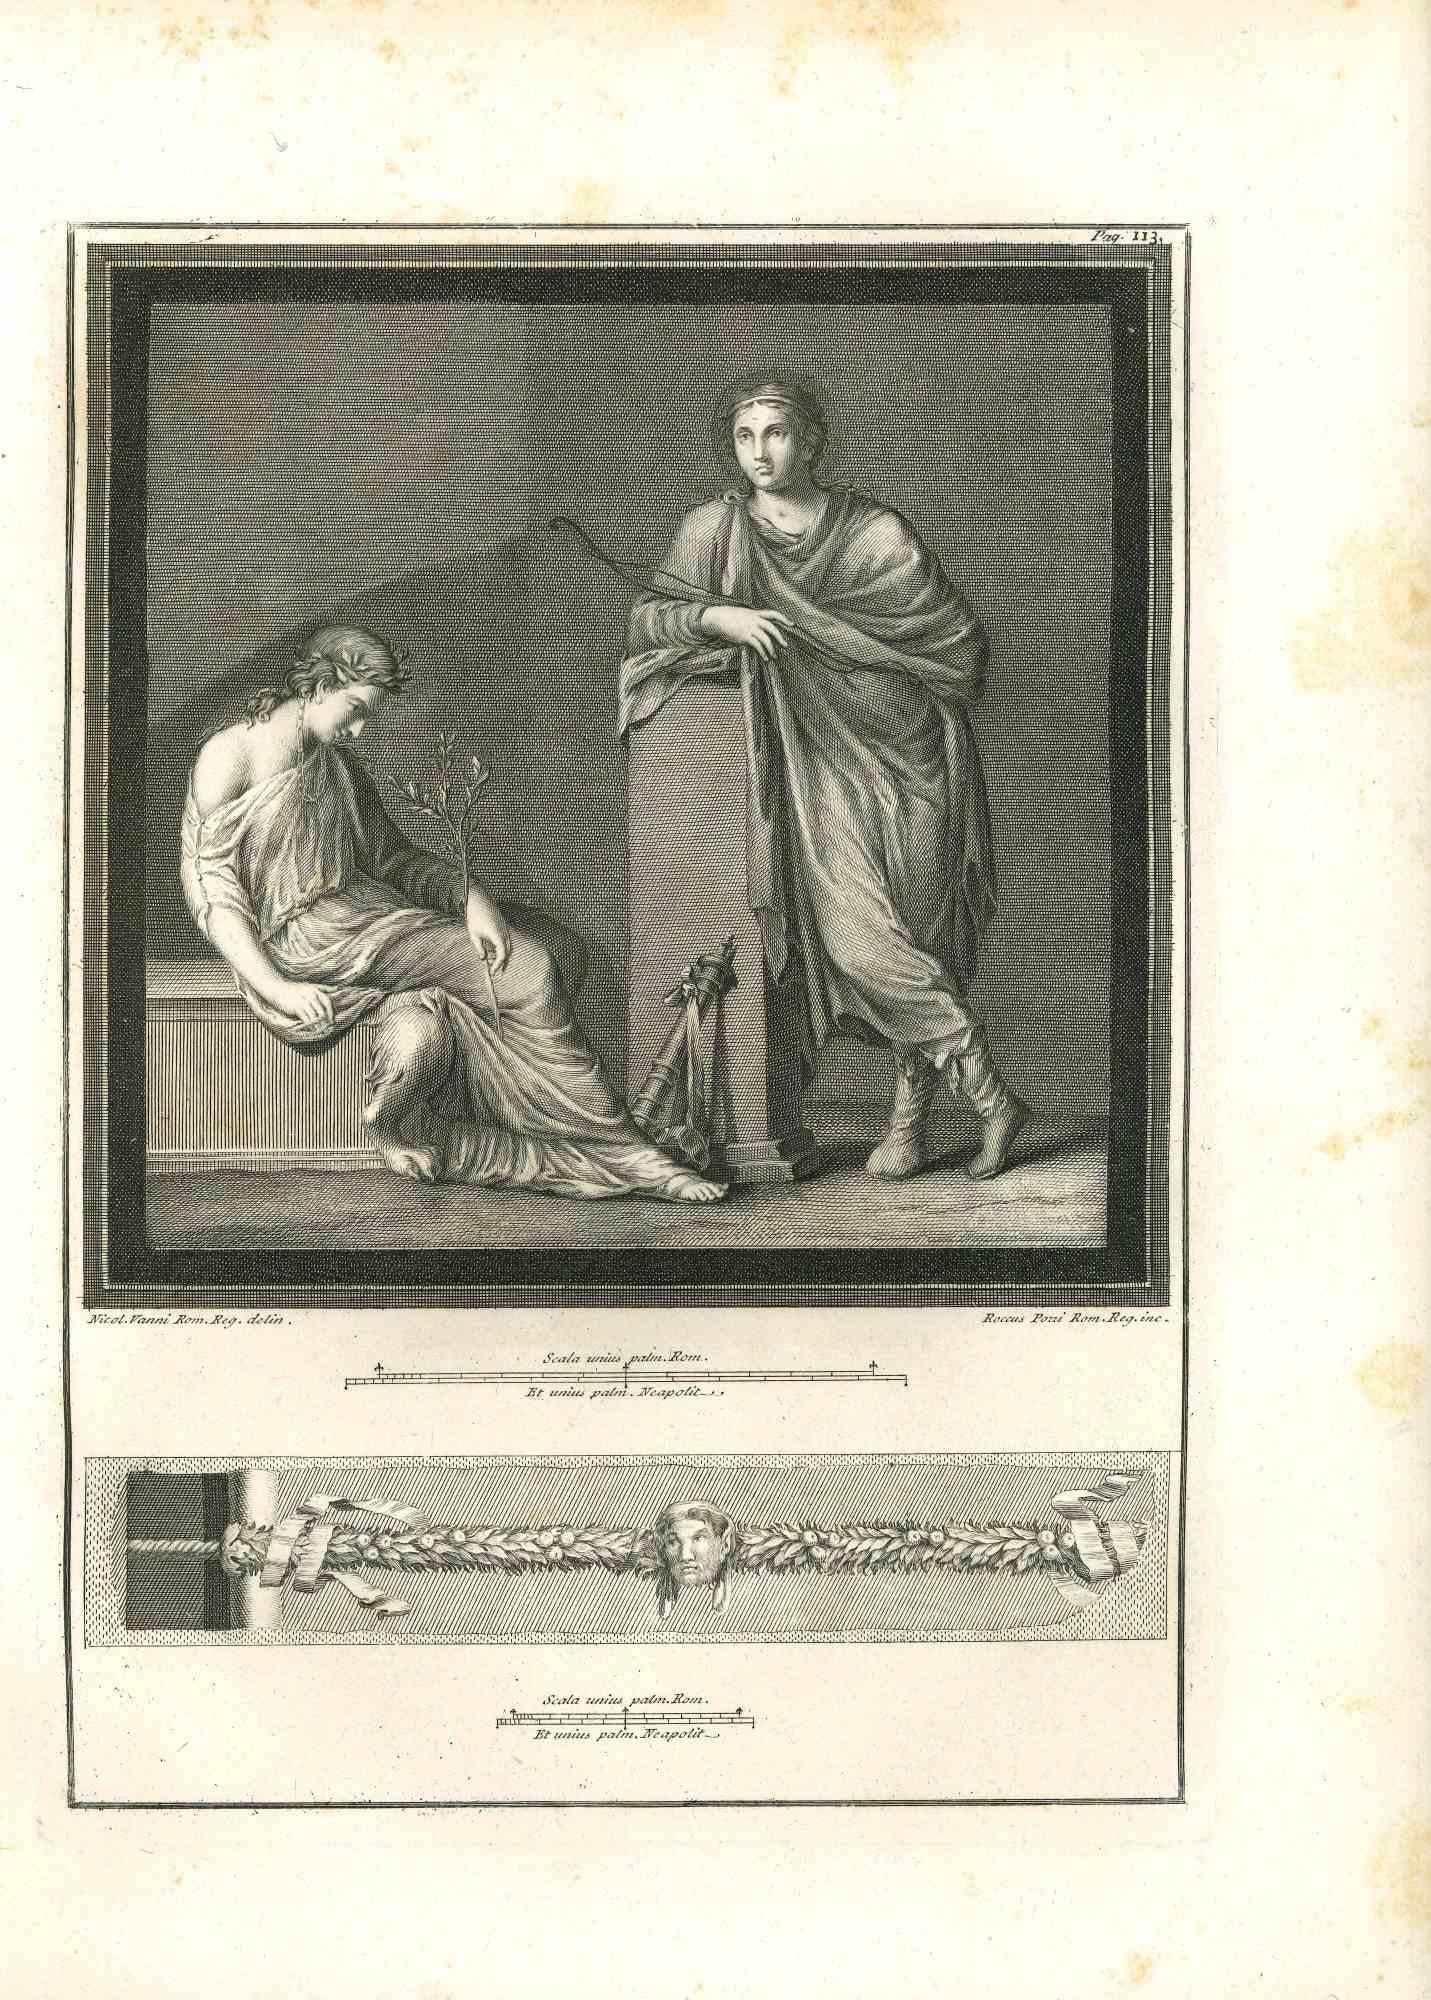 Roccus Pozzi, Nicola Vanni Figurative Print – Antikes römisches Gemälde - Original-Radierung von R. Pozzi, N. Vanni - 18. Jahrhundert